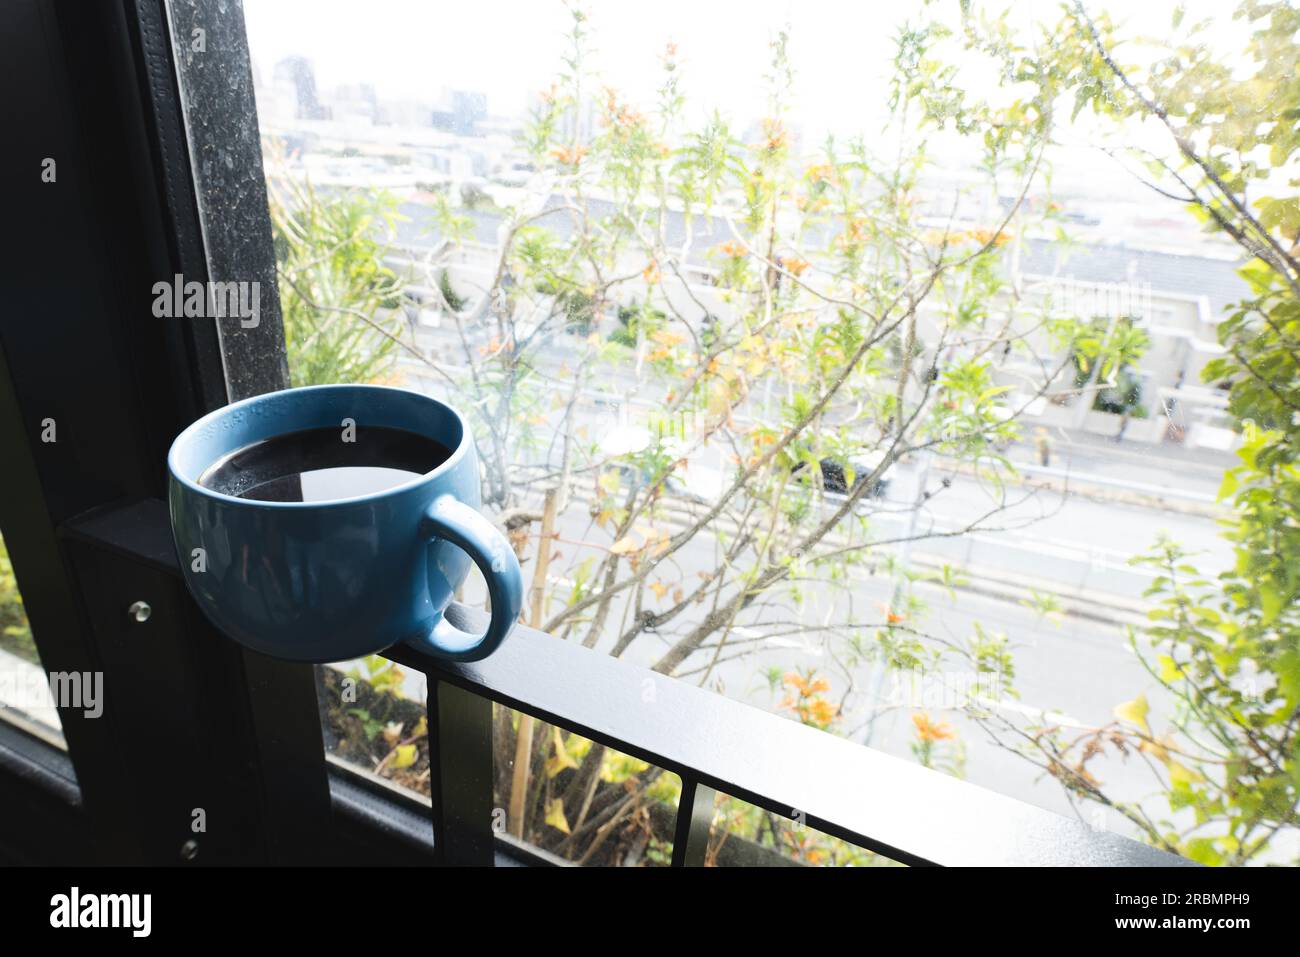 Tasse à café équilibrée sur une balustrade de balcon, avec cimes d'arbre au-delà. Maison, détente et vie domestique. Banque D'Images